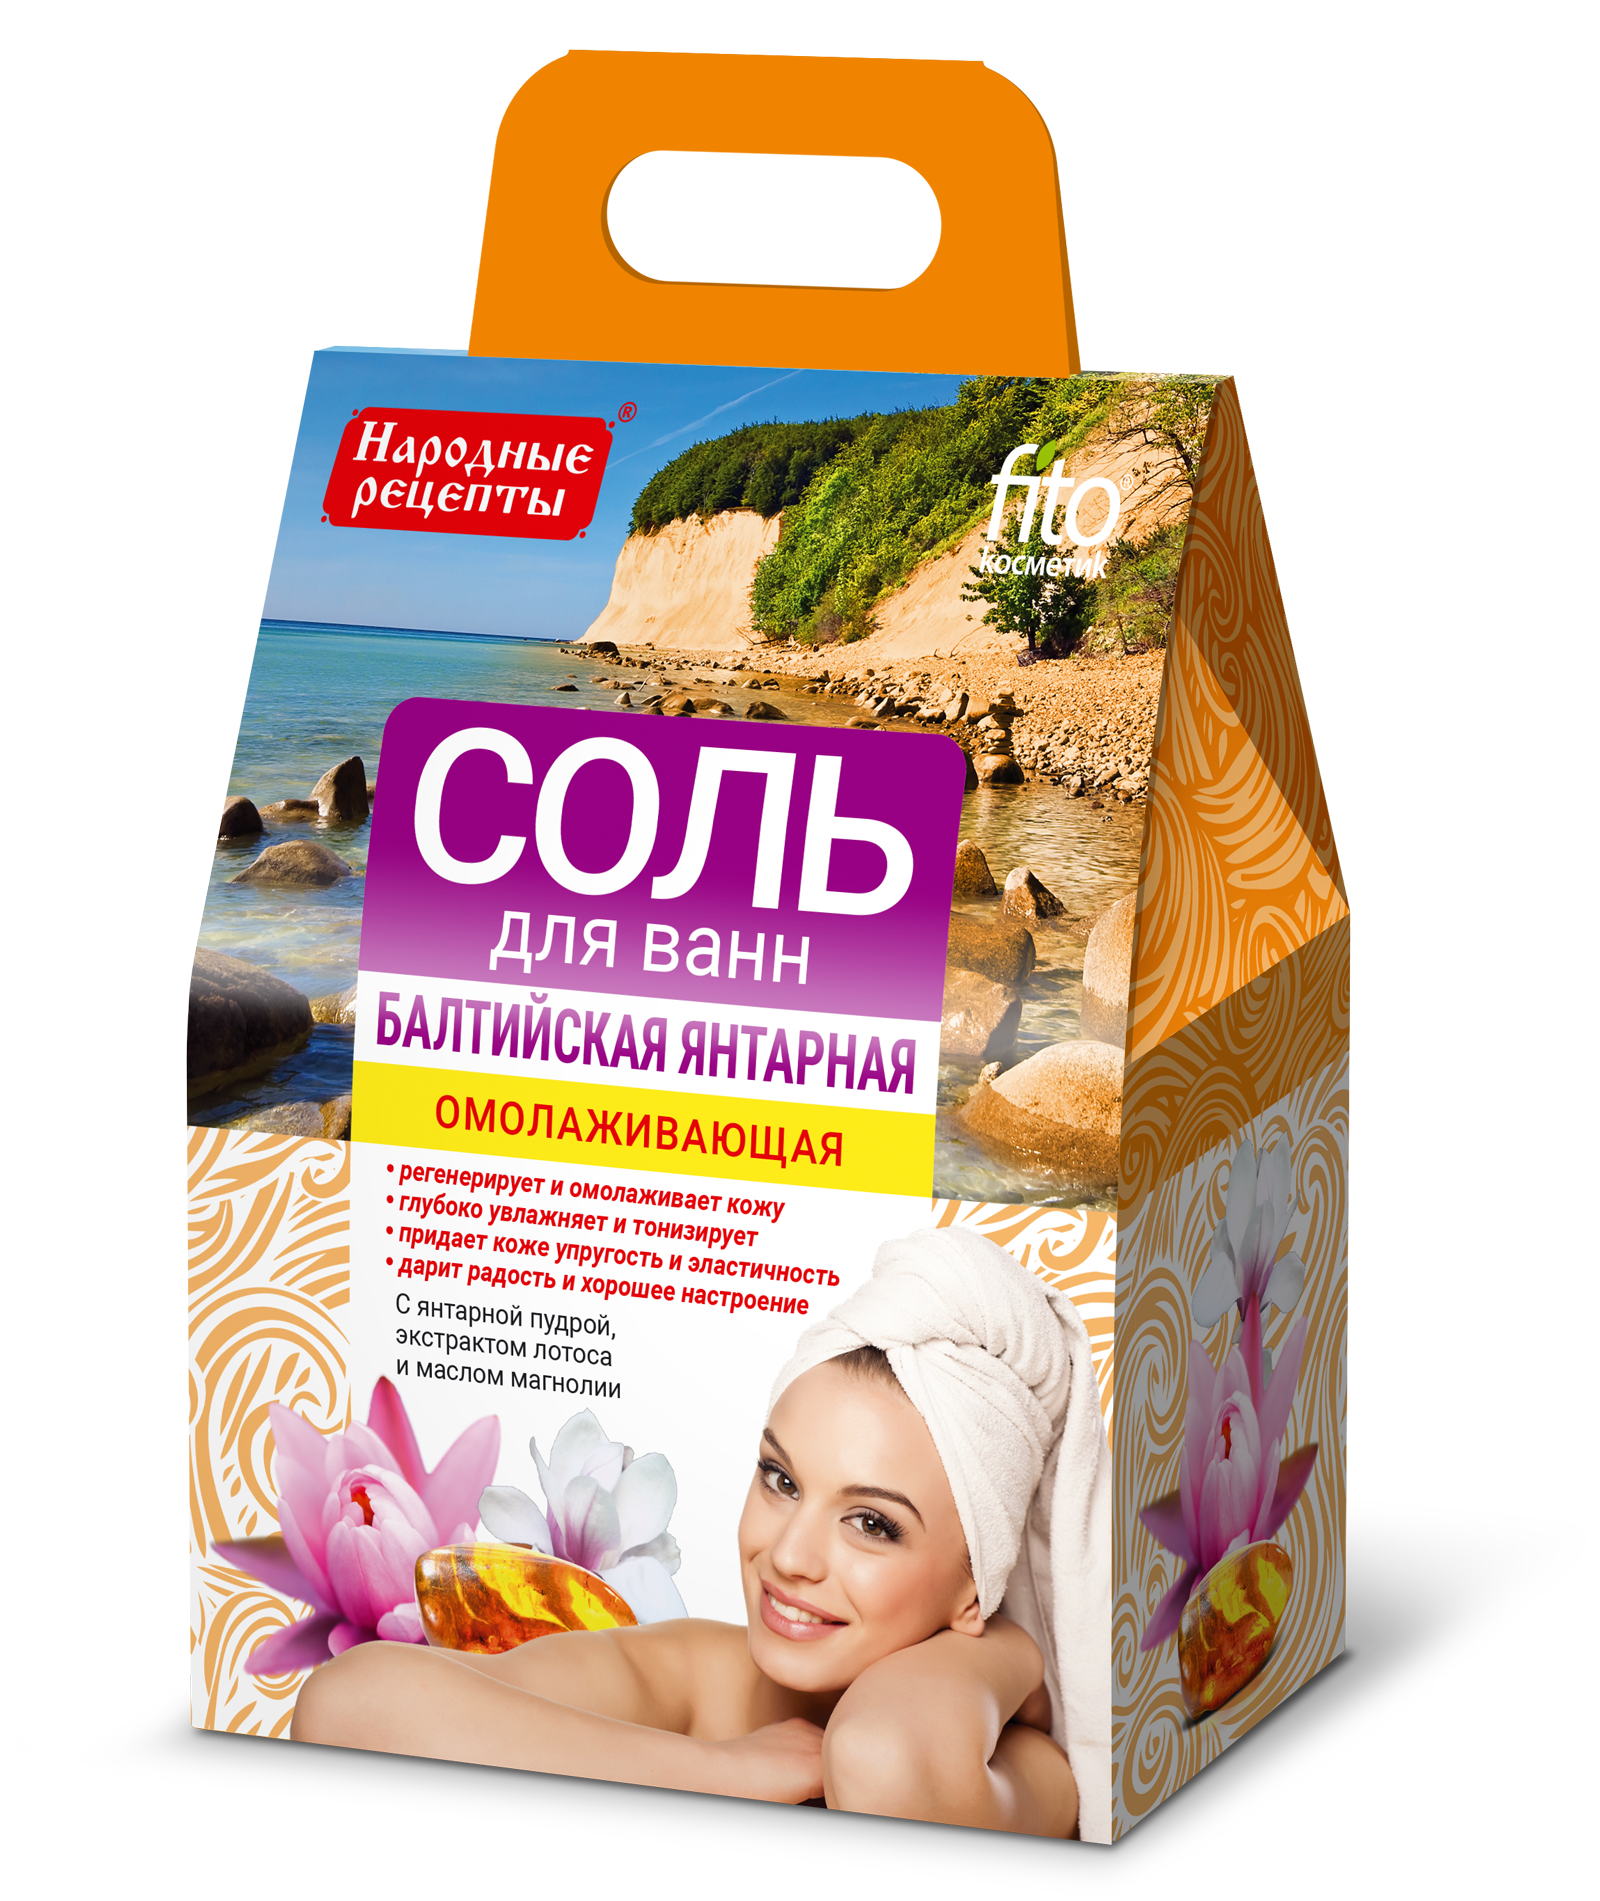 Соль для ванны Народные рецепты Балтийская янтарная омолаживающая 500гр - в интернет-магазине tut-beauty.by